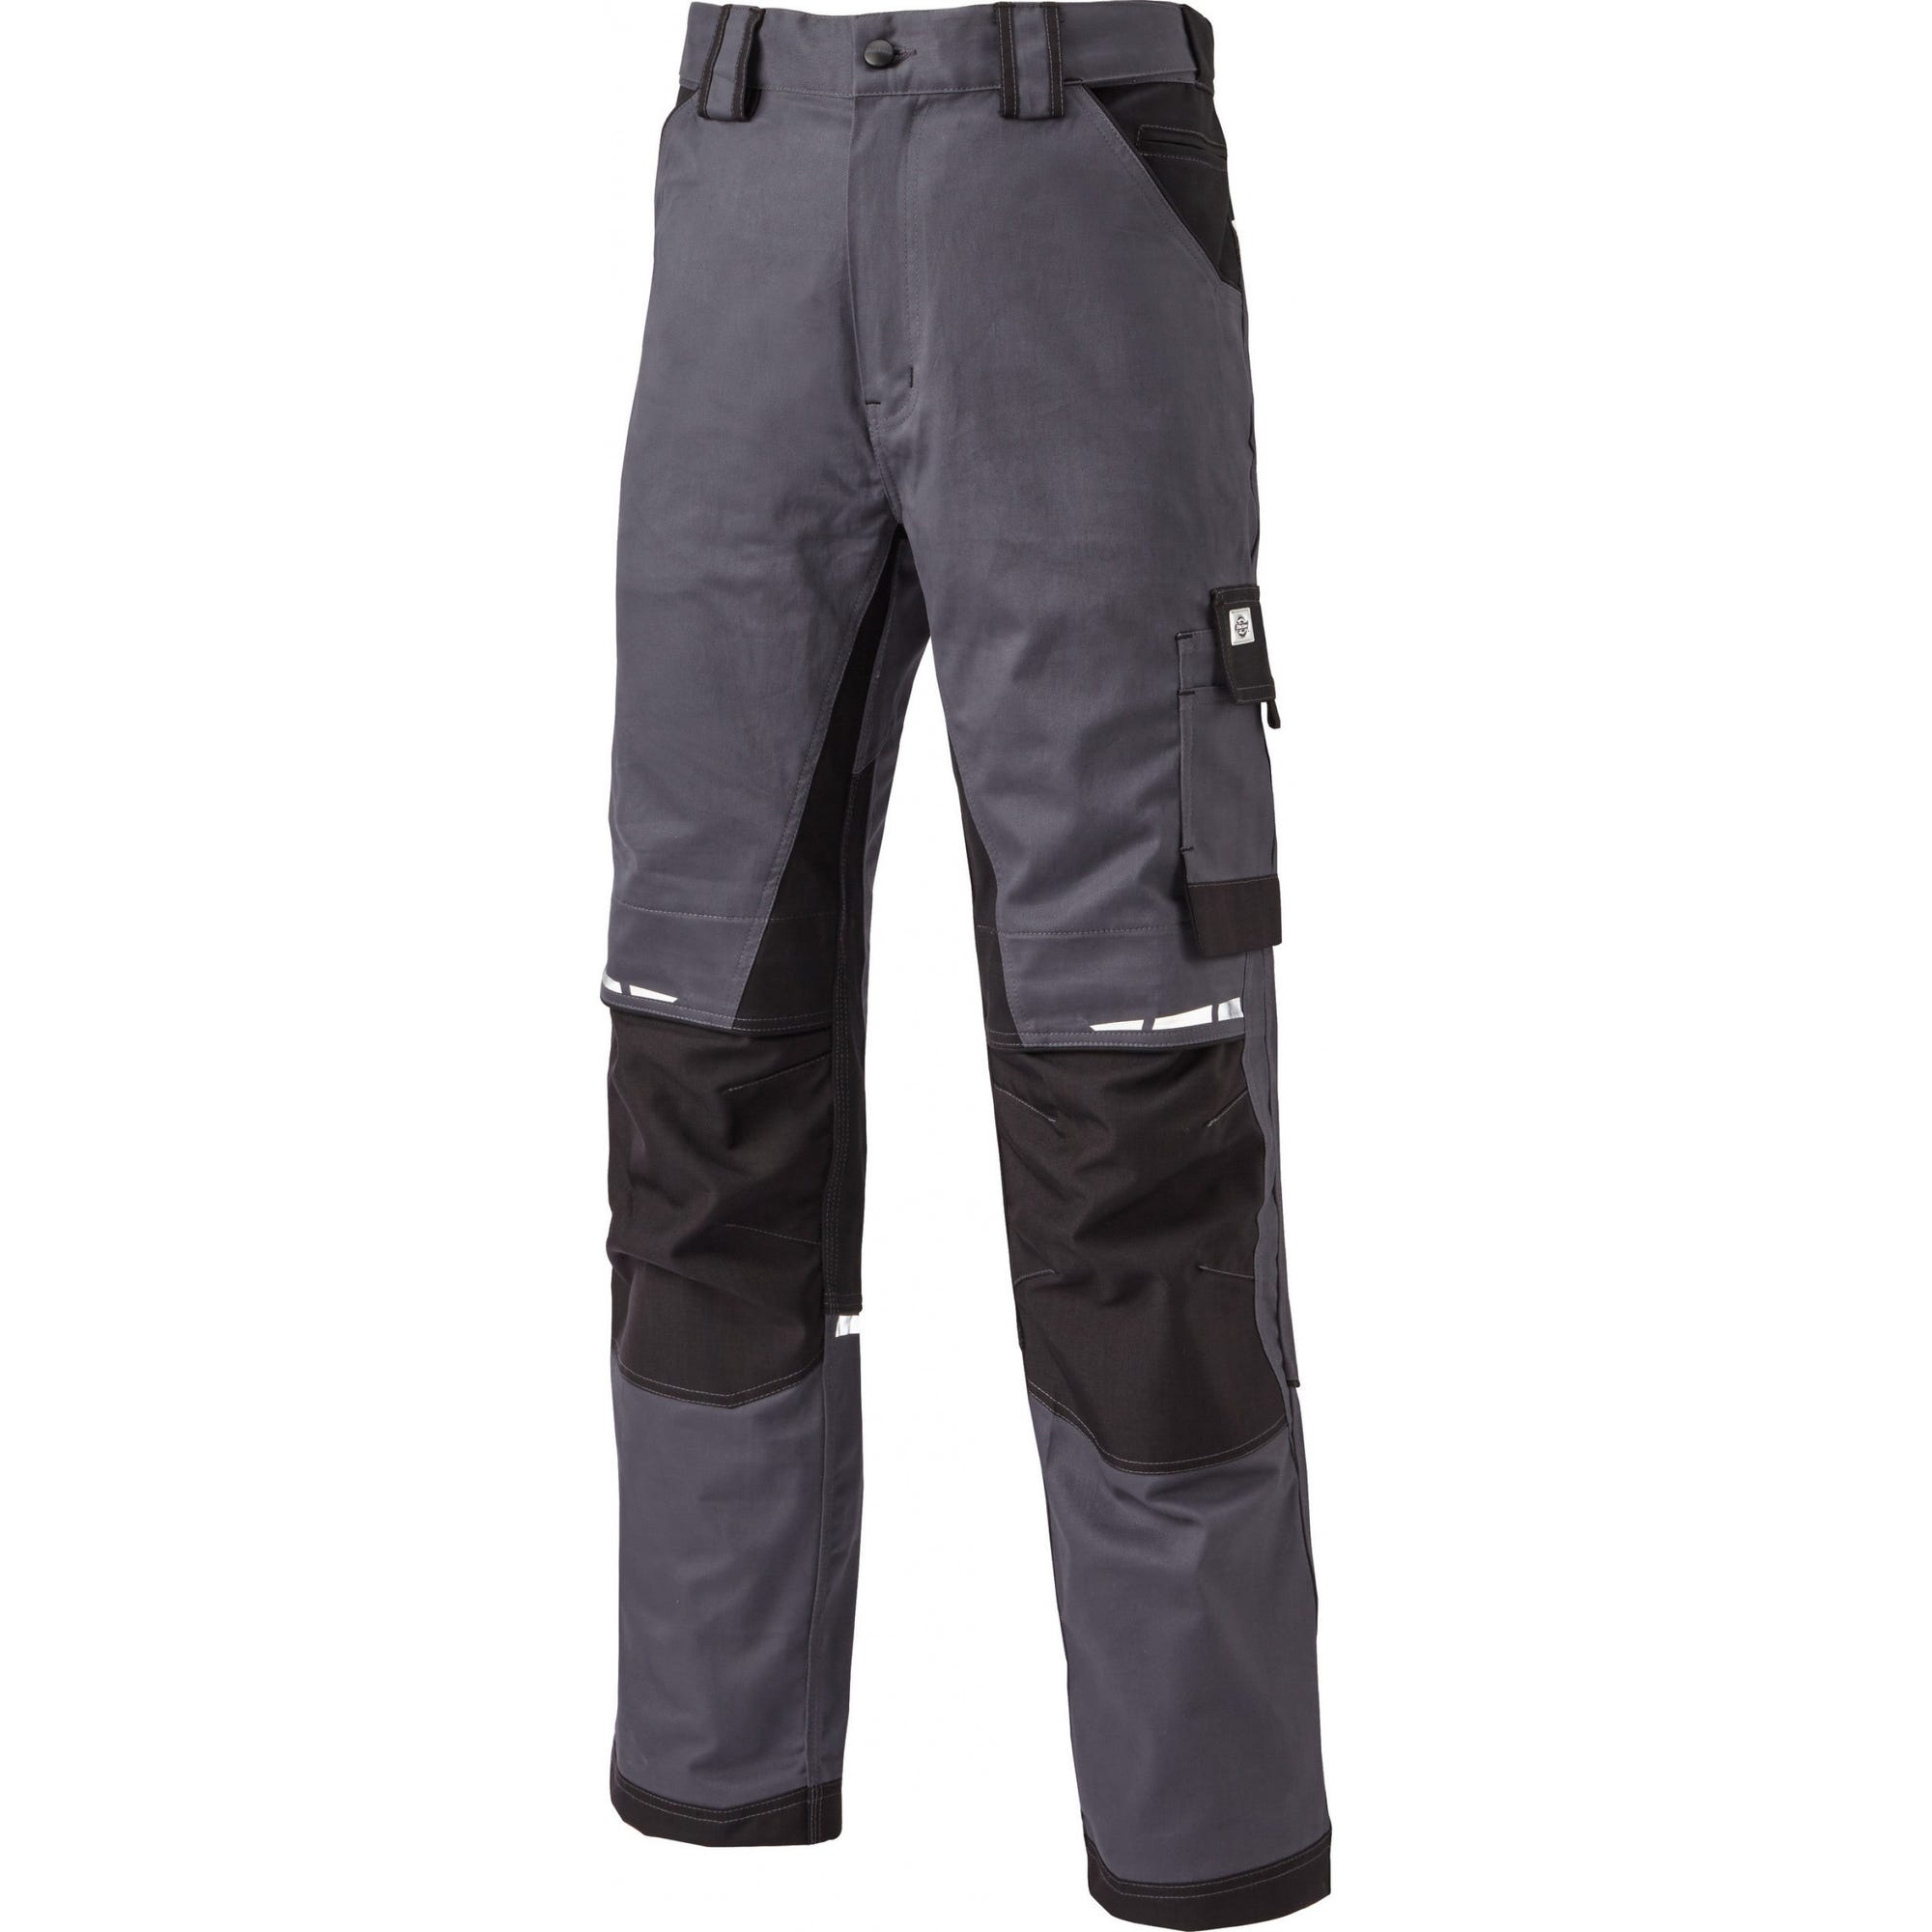 Pantalon de travail GDT Premium gris/noir - Dickies - Taille 48 5